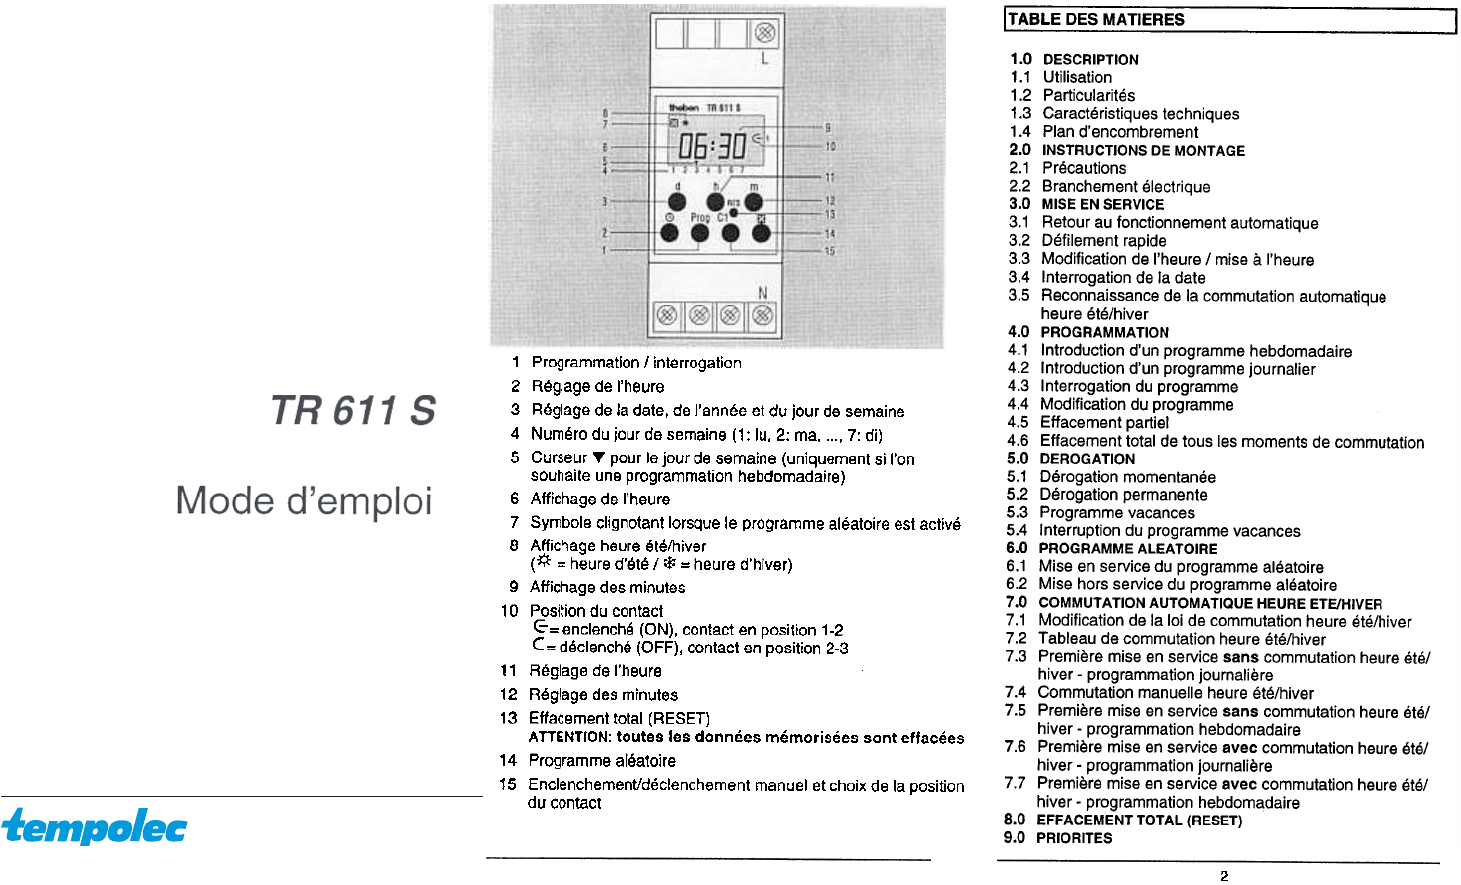 lettelse Inspektion krøllet Manual Theben TR 611 S (page 1 of 8) (French)